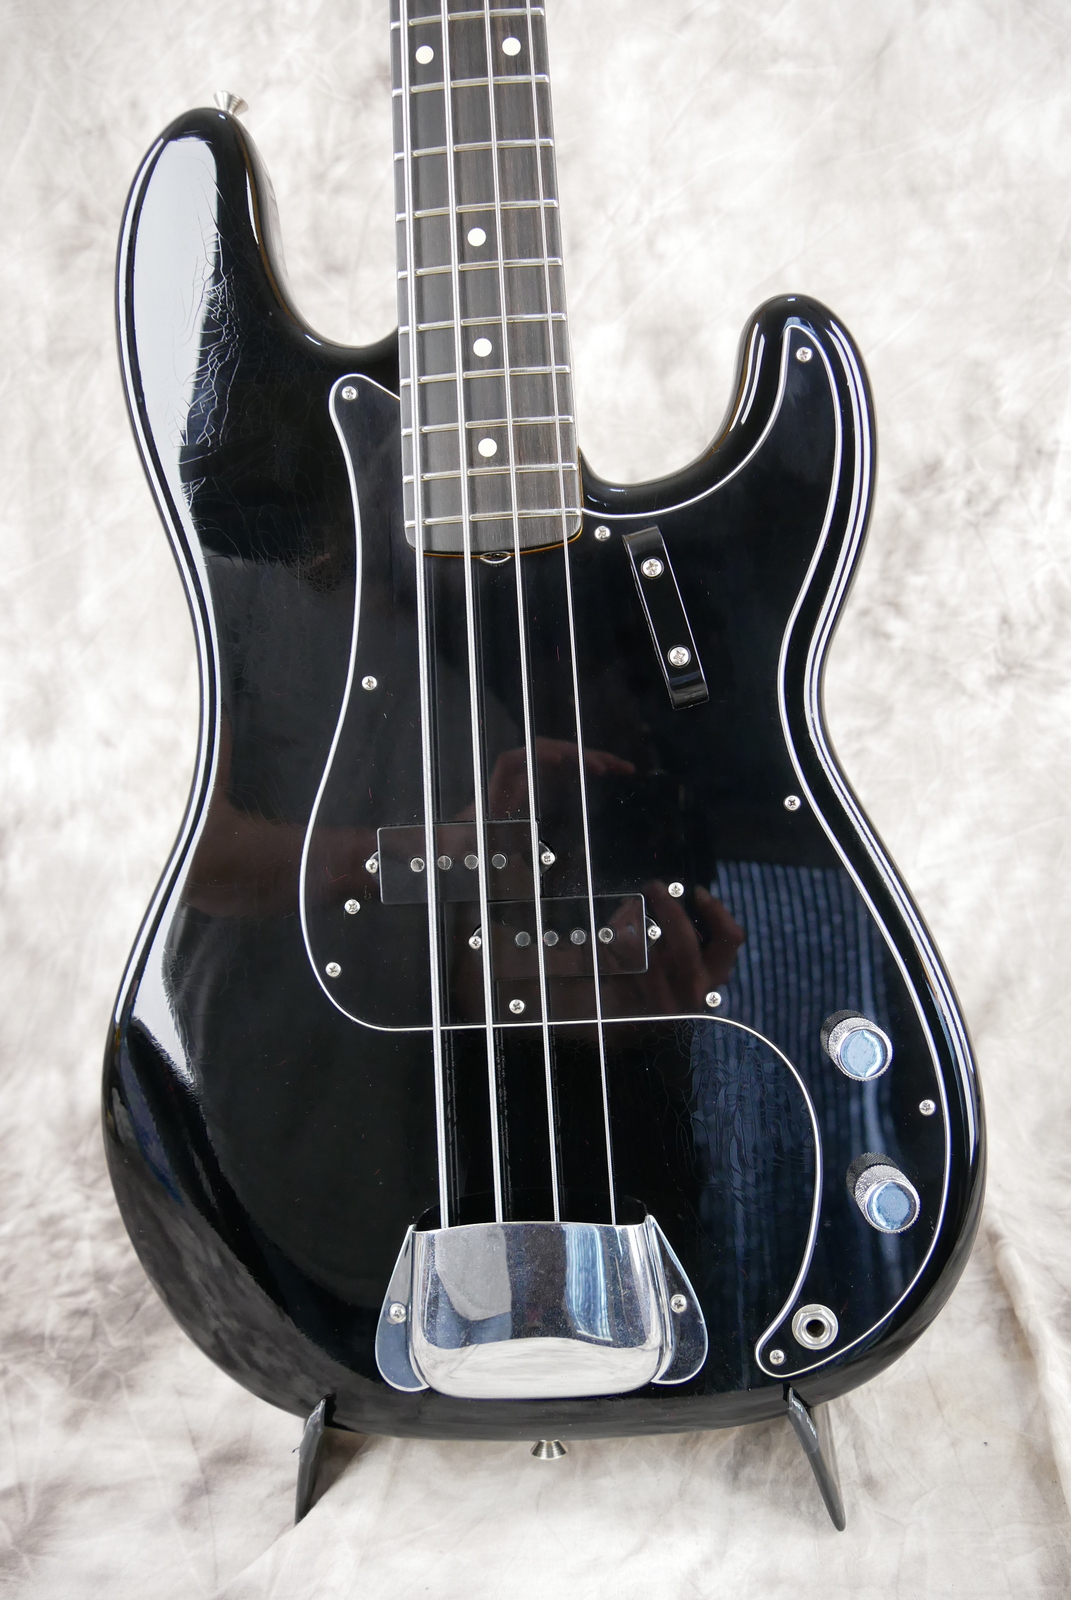 Fender-Precision-Bass-59-RI-black-Custom-Shop-ebony-fretboard-003.JPG